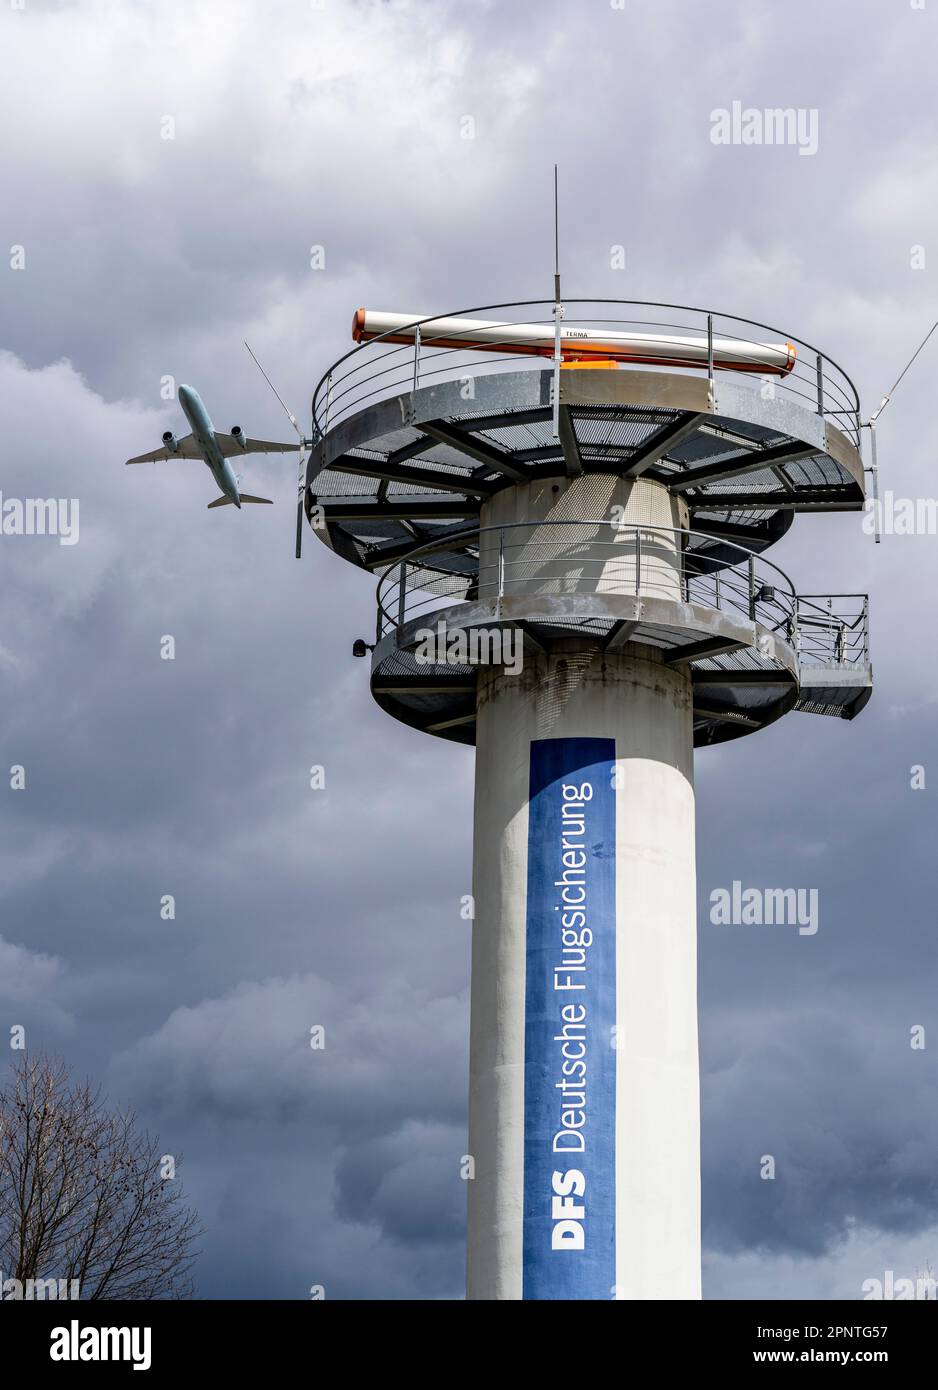 Torre radar del controllo del traffico aereo tedesco, DFS, presso l'aeroporto di Francoforte sul meno, fra, decollo di aerei. Foto Stock